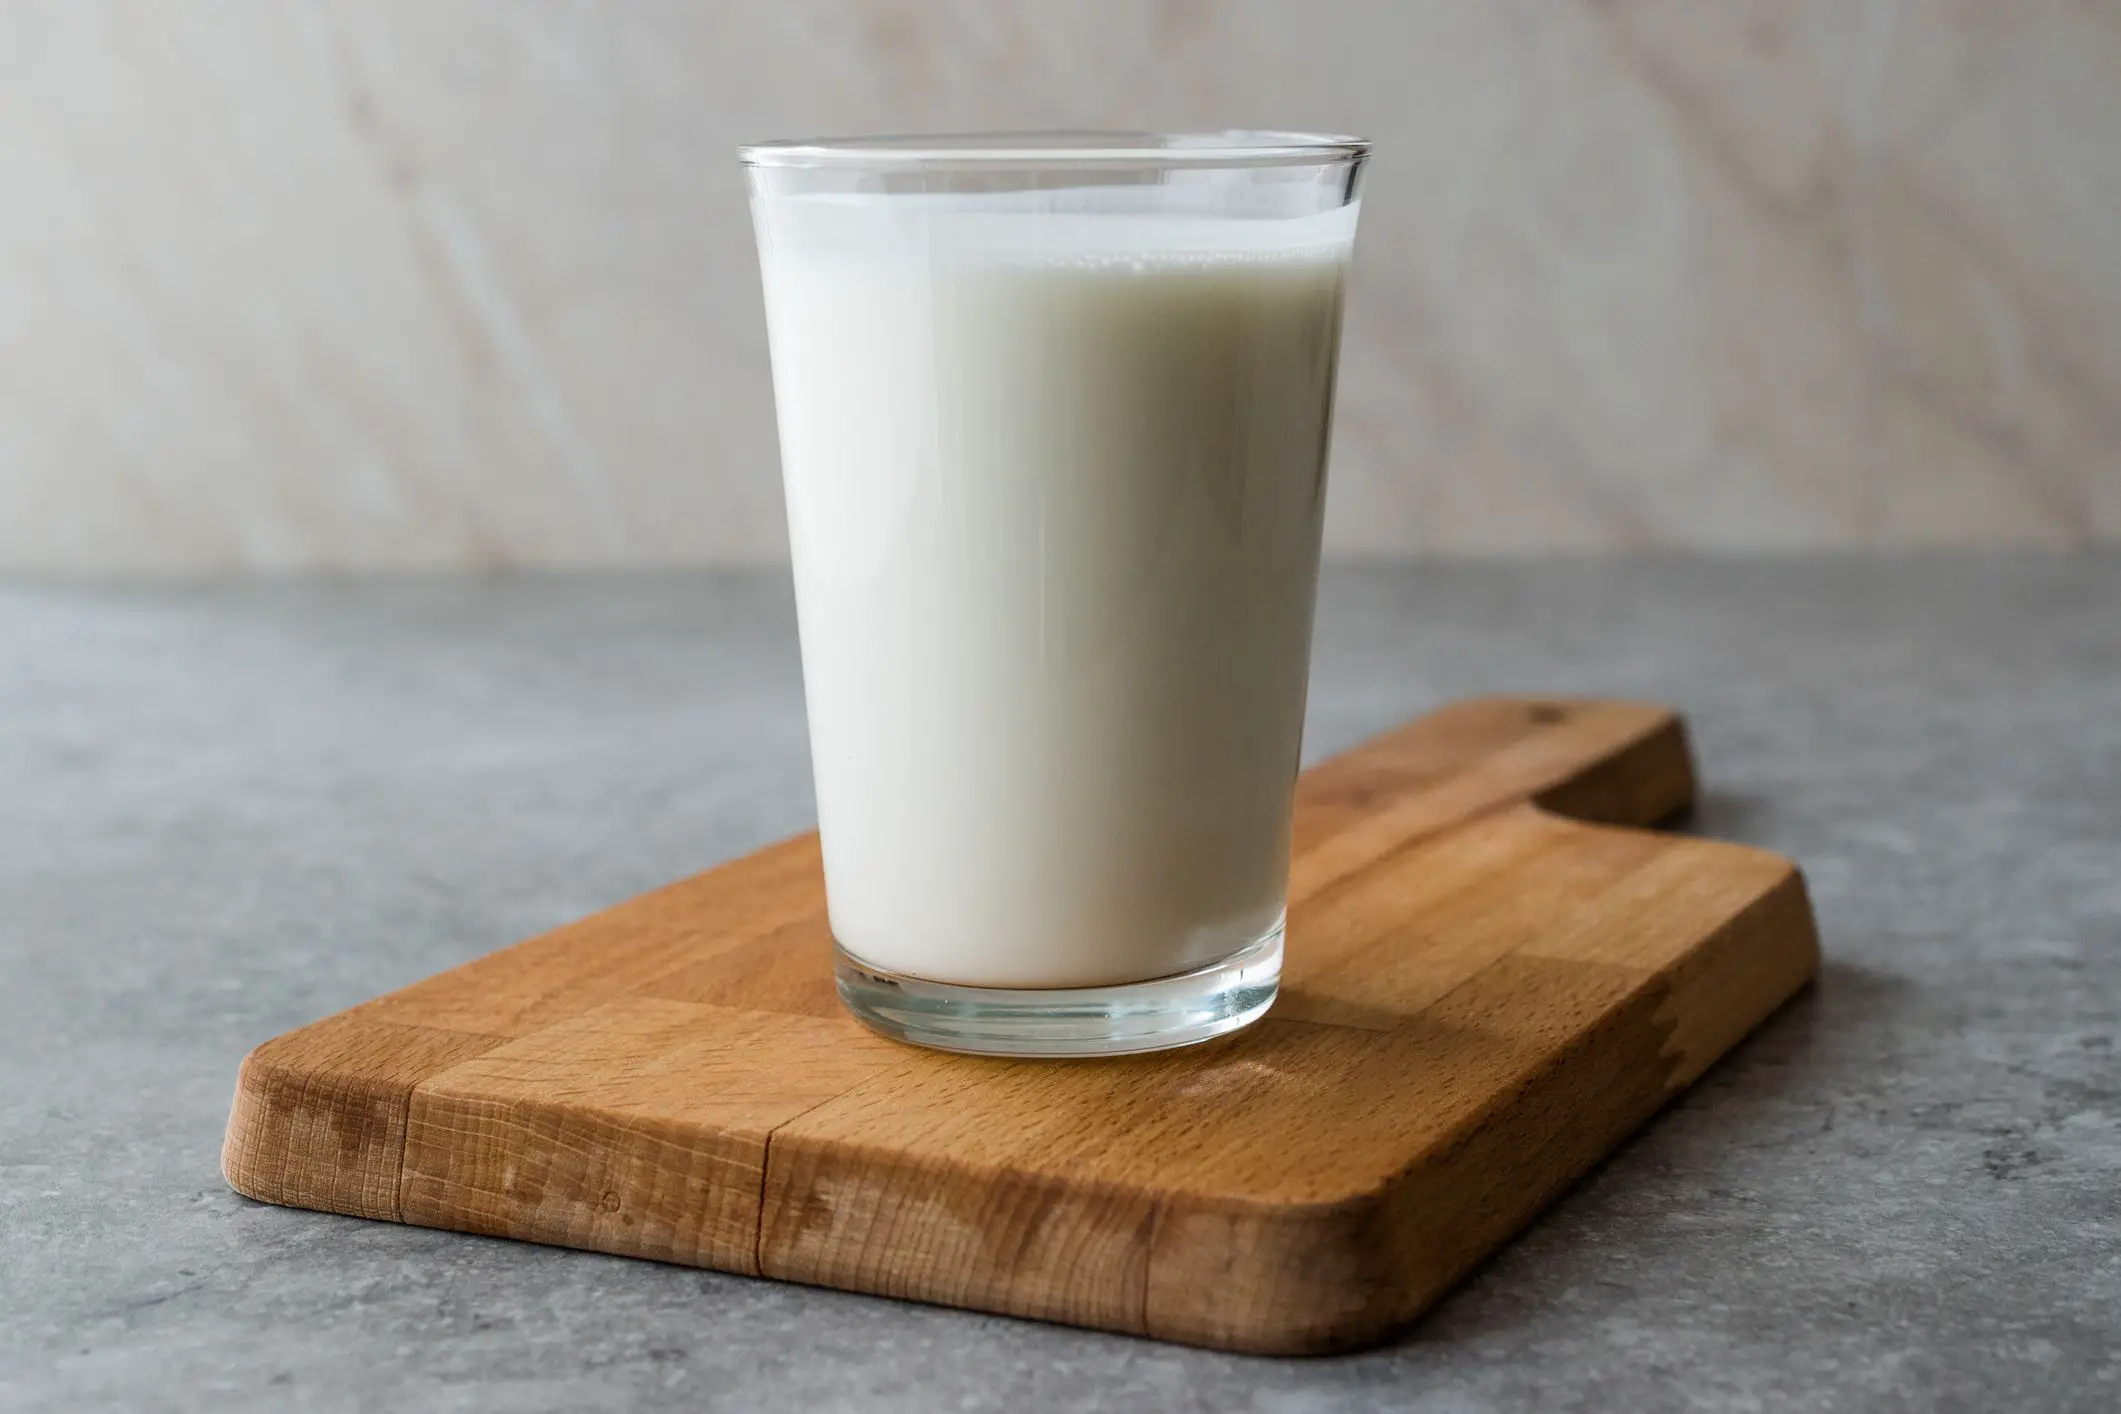 moisturize skin with milk or buttermilk